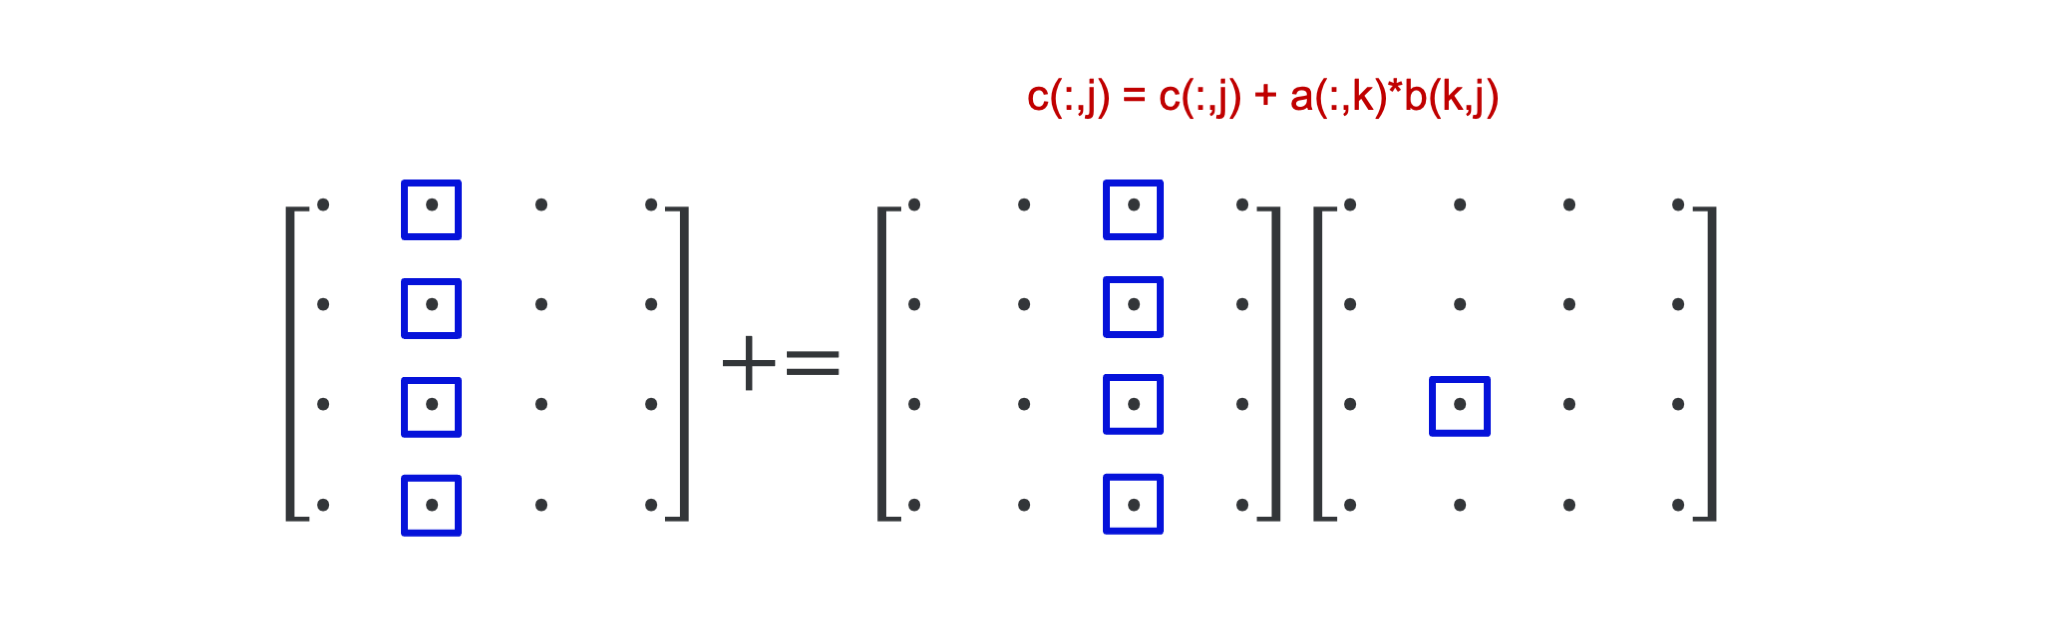 Matrix multiplication inner loop: vector operation